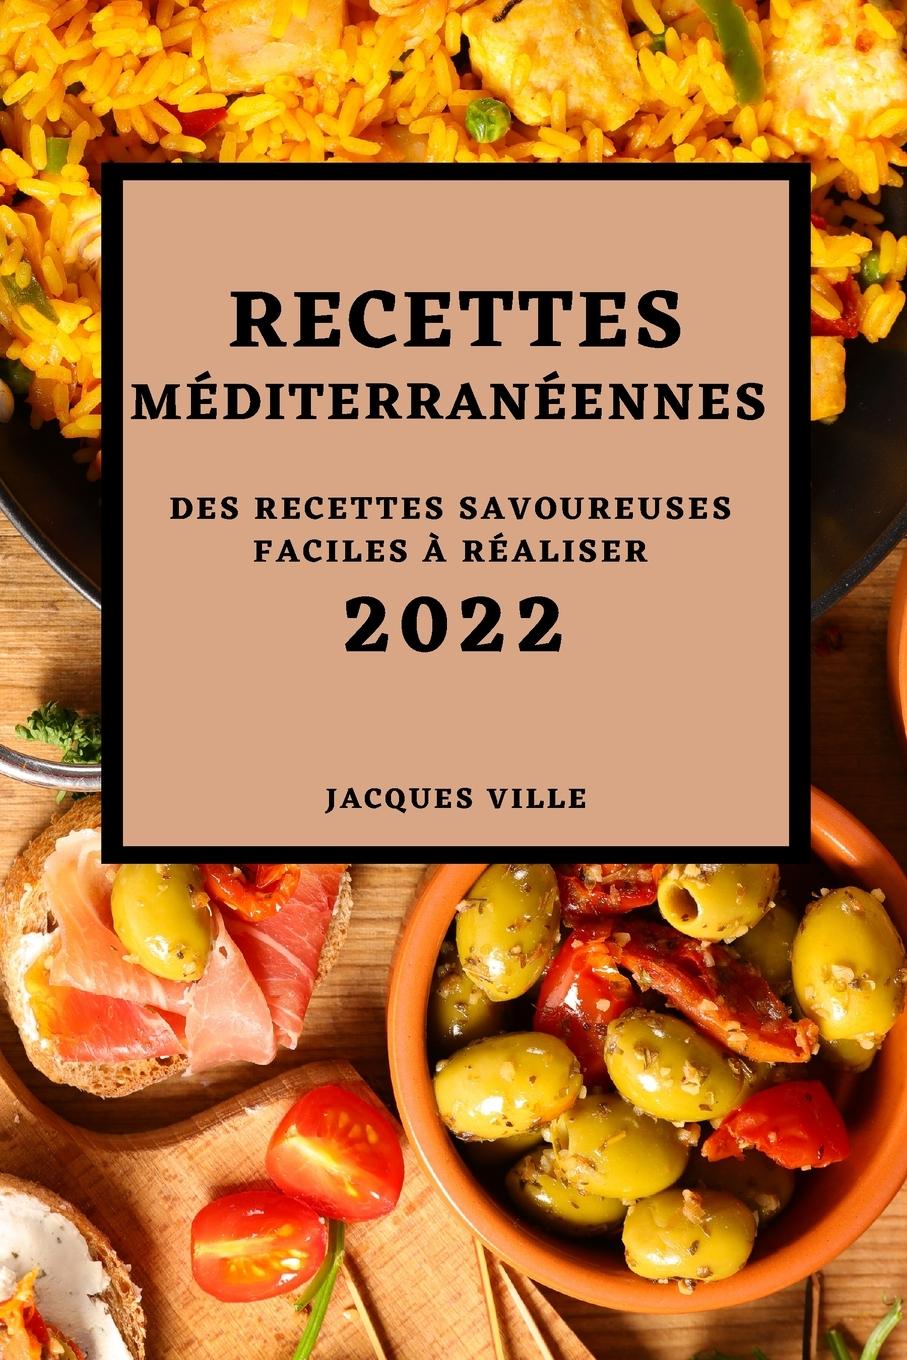 Книга Recettes Mediterraneennes 2022 